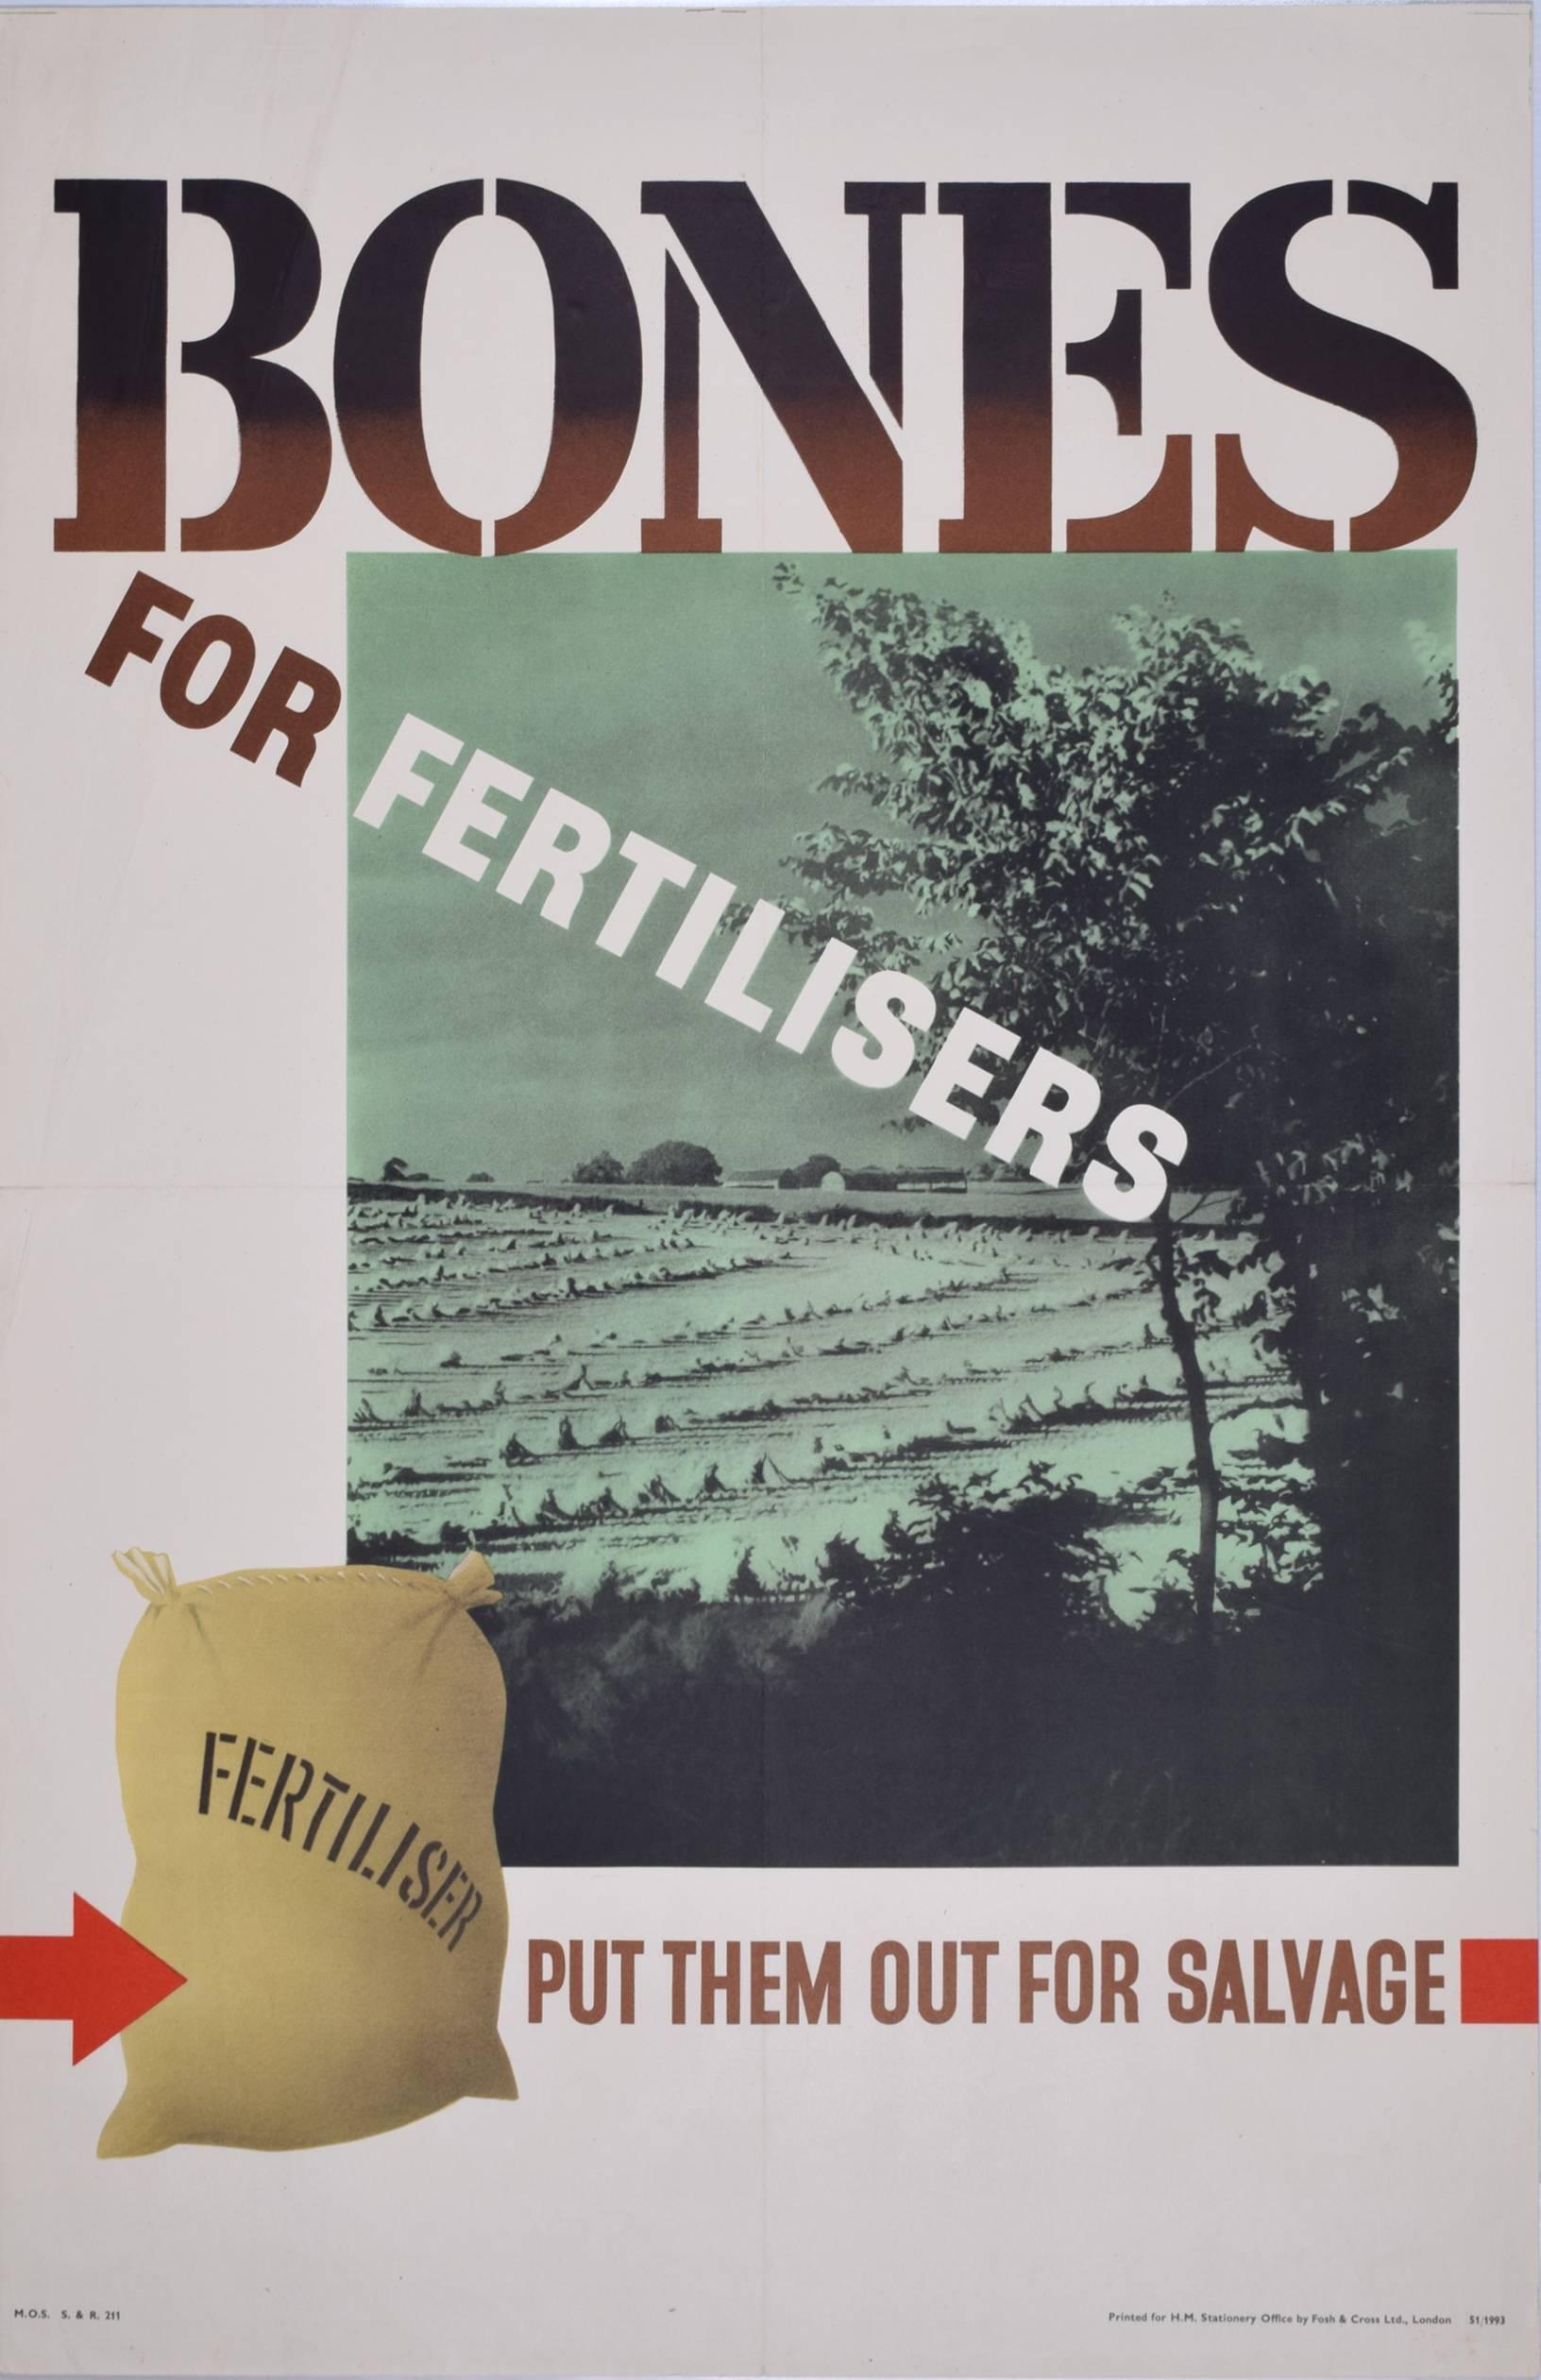 Bones For Fertilisers - Affiche originale de la Seconde Guerre mondiale : « Waste not want not » (Ne voulez pas les déchets